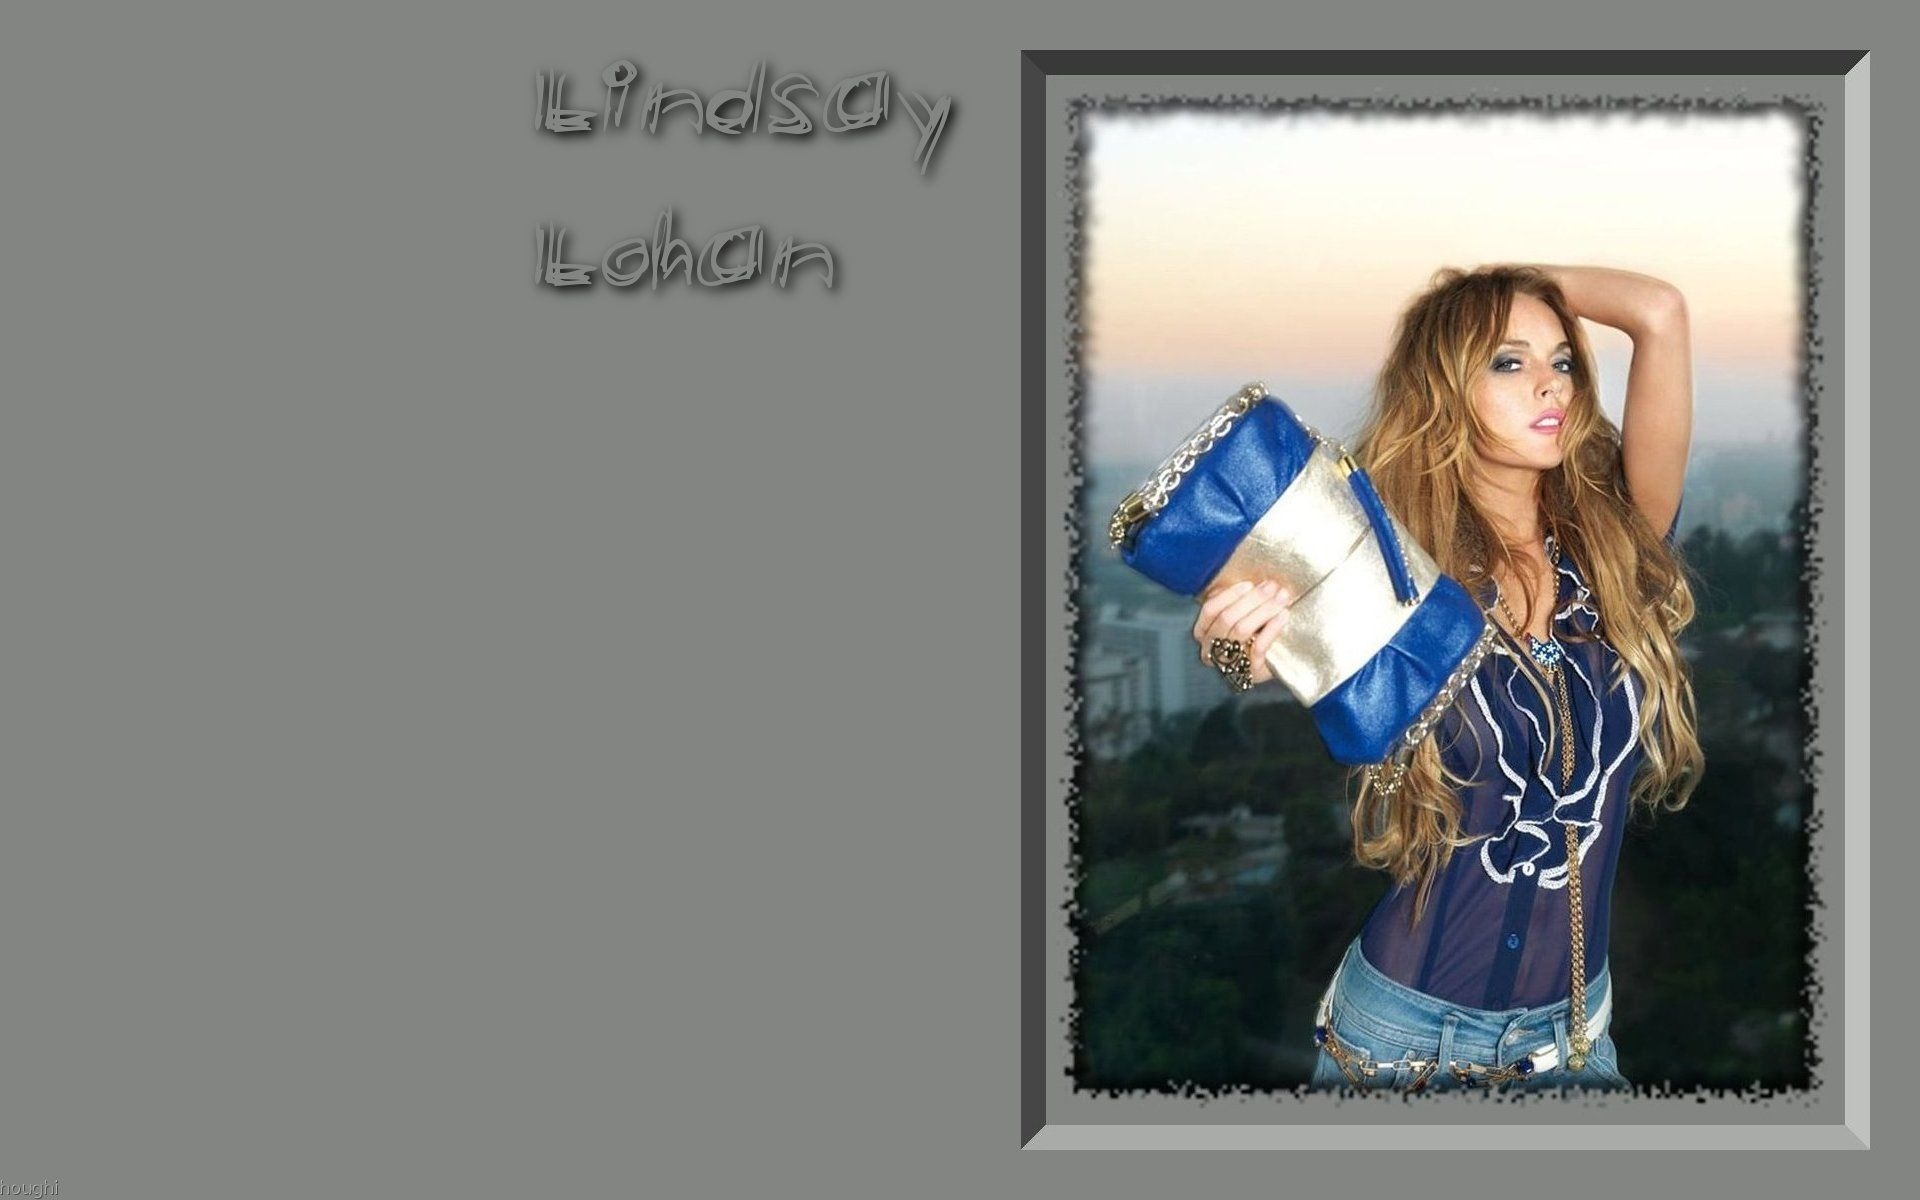 Lindsay Lohan 林赛·罗韩 美女壁纸18 - 1920x1200